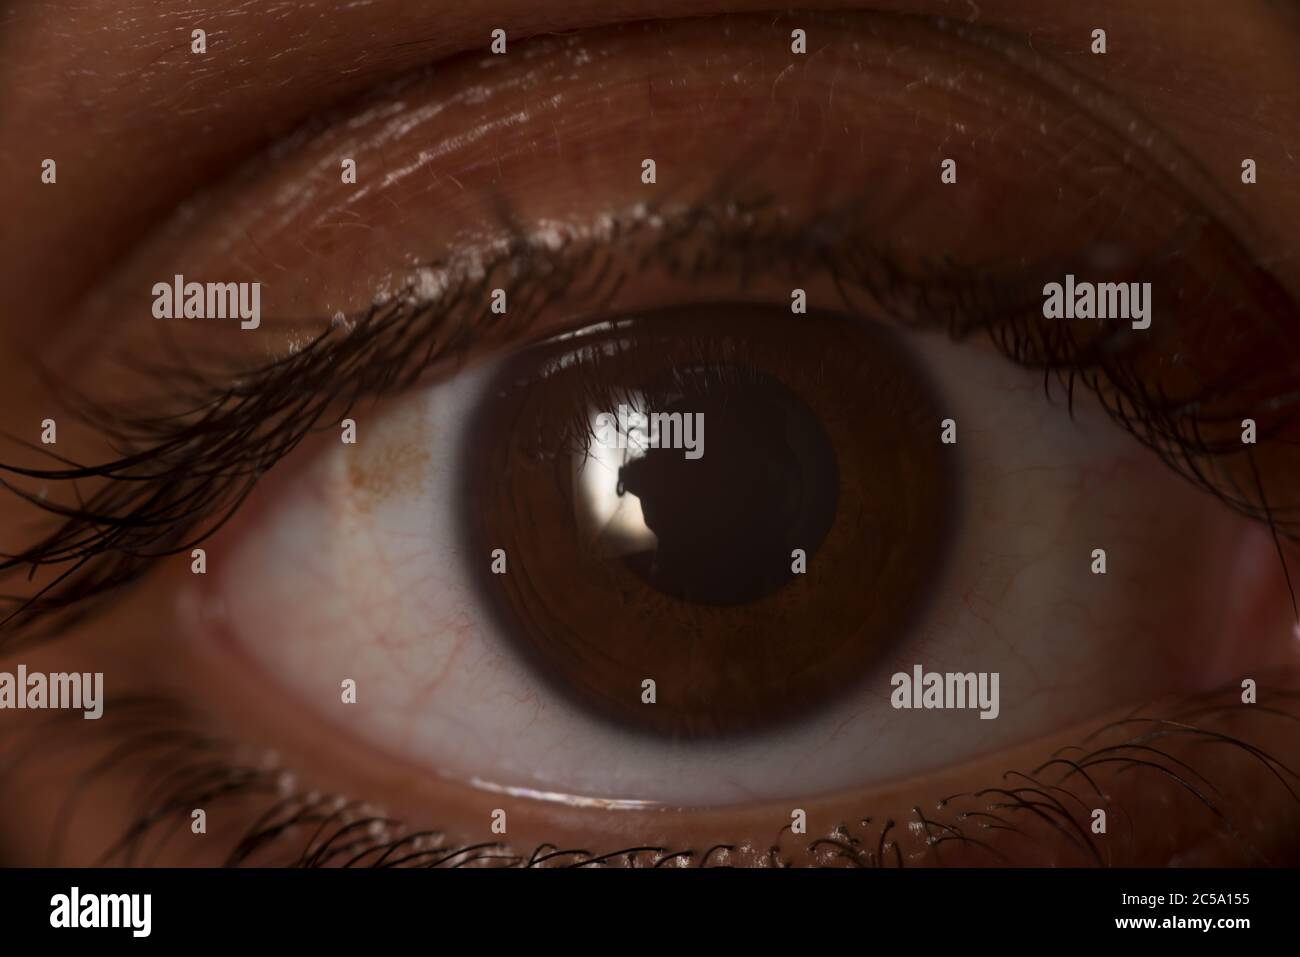 Occhio umano marrone scuro, cornea e strato esterno del bulbo oculare, con muscolo ciliare; anello di muscolo liscio Foto Stock